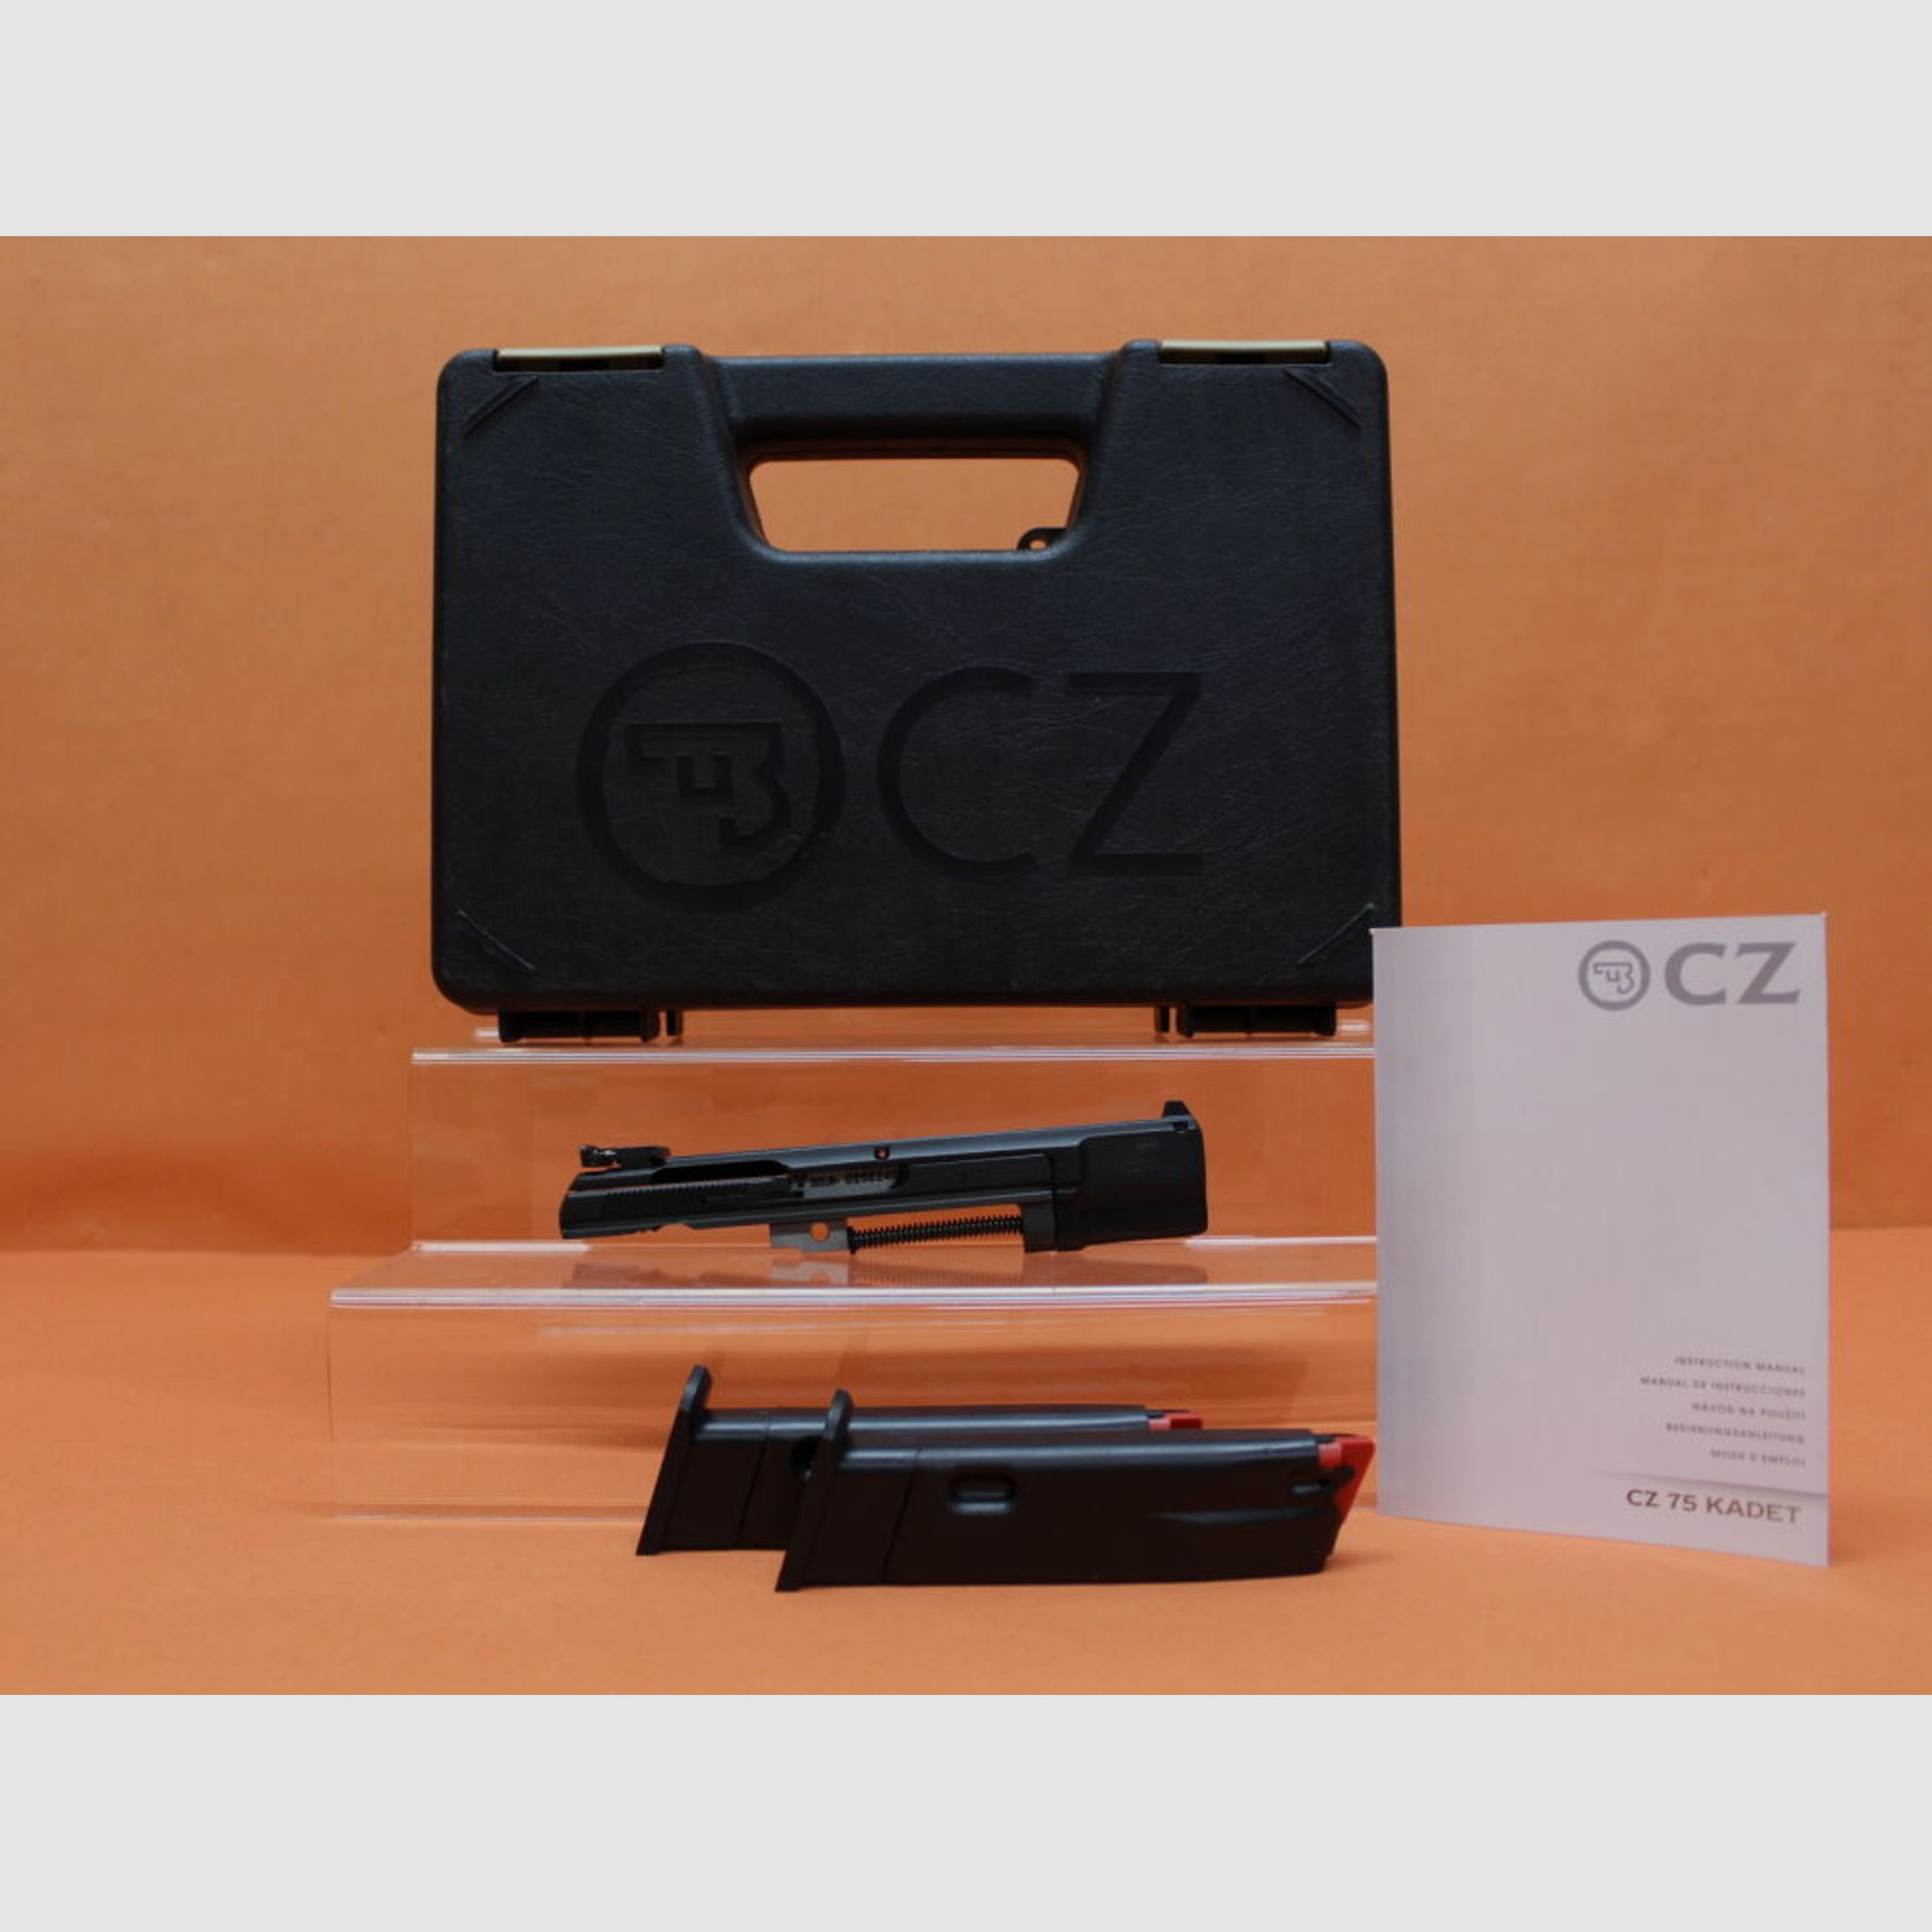 CZUB	 Wechselsystem .22lr CZ75 Kadet2 118mm Lauf/ 3-Dot Mikrometervisierung (.22lfB/.22L.R.)